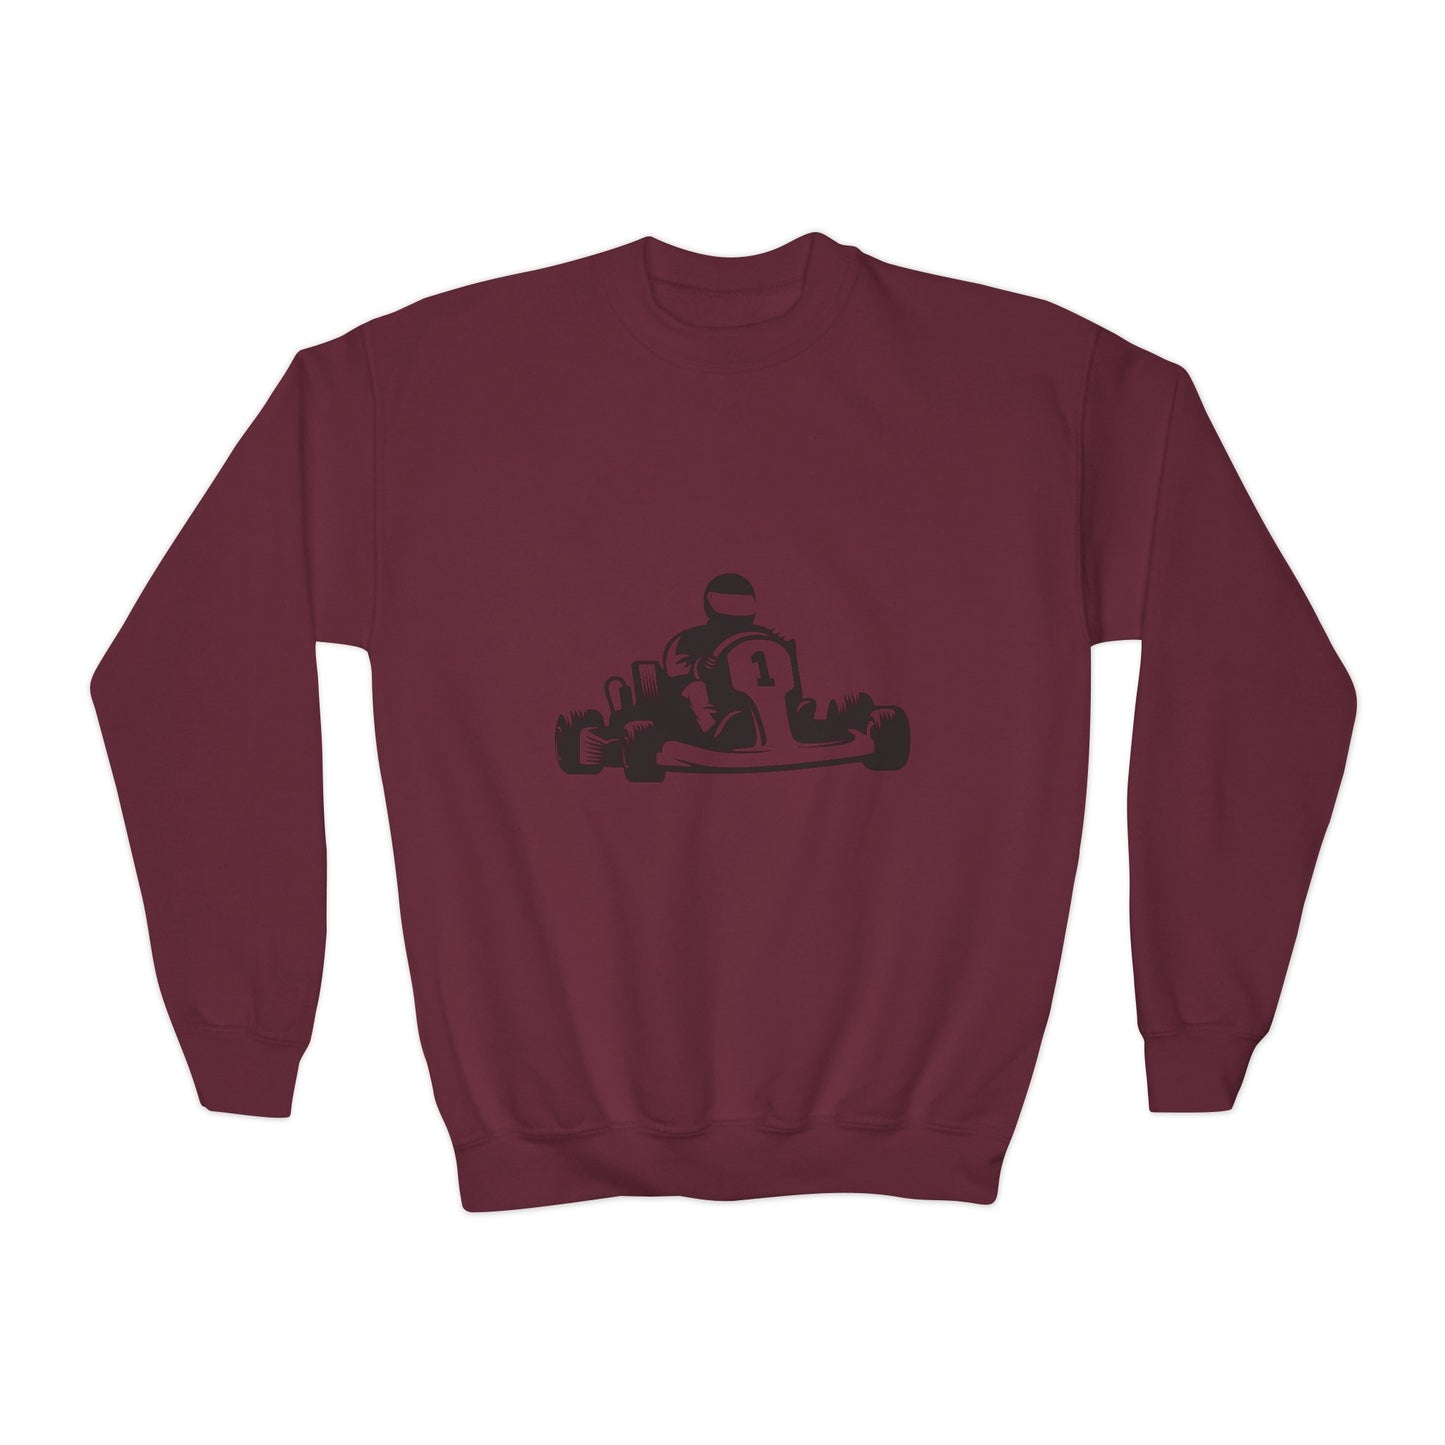 Youth Crewneck Sweatshirt: Racing